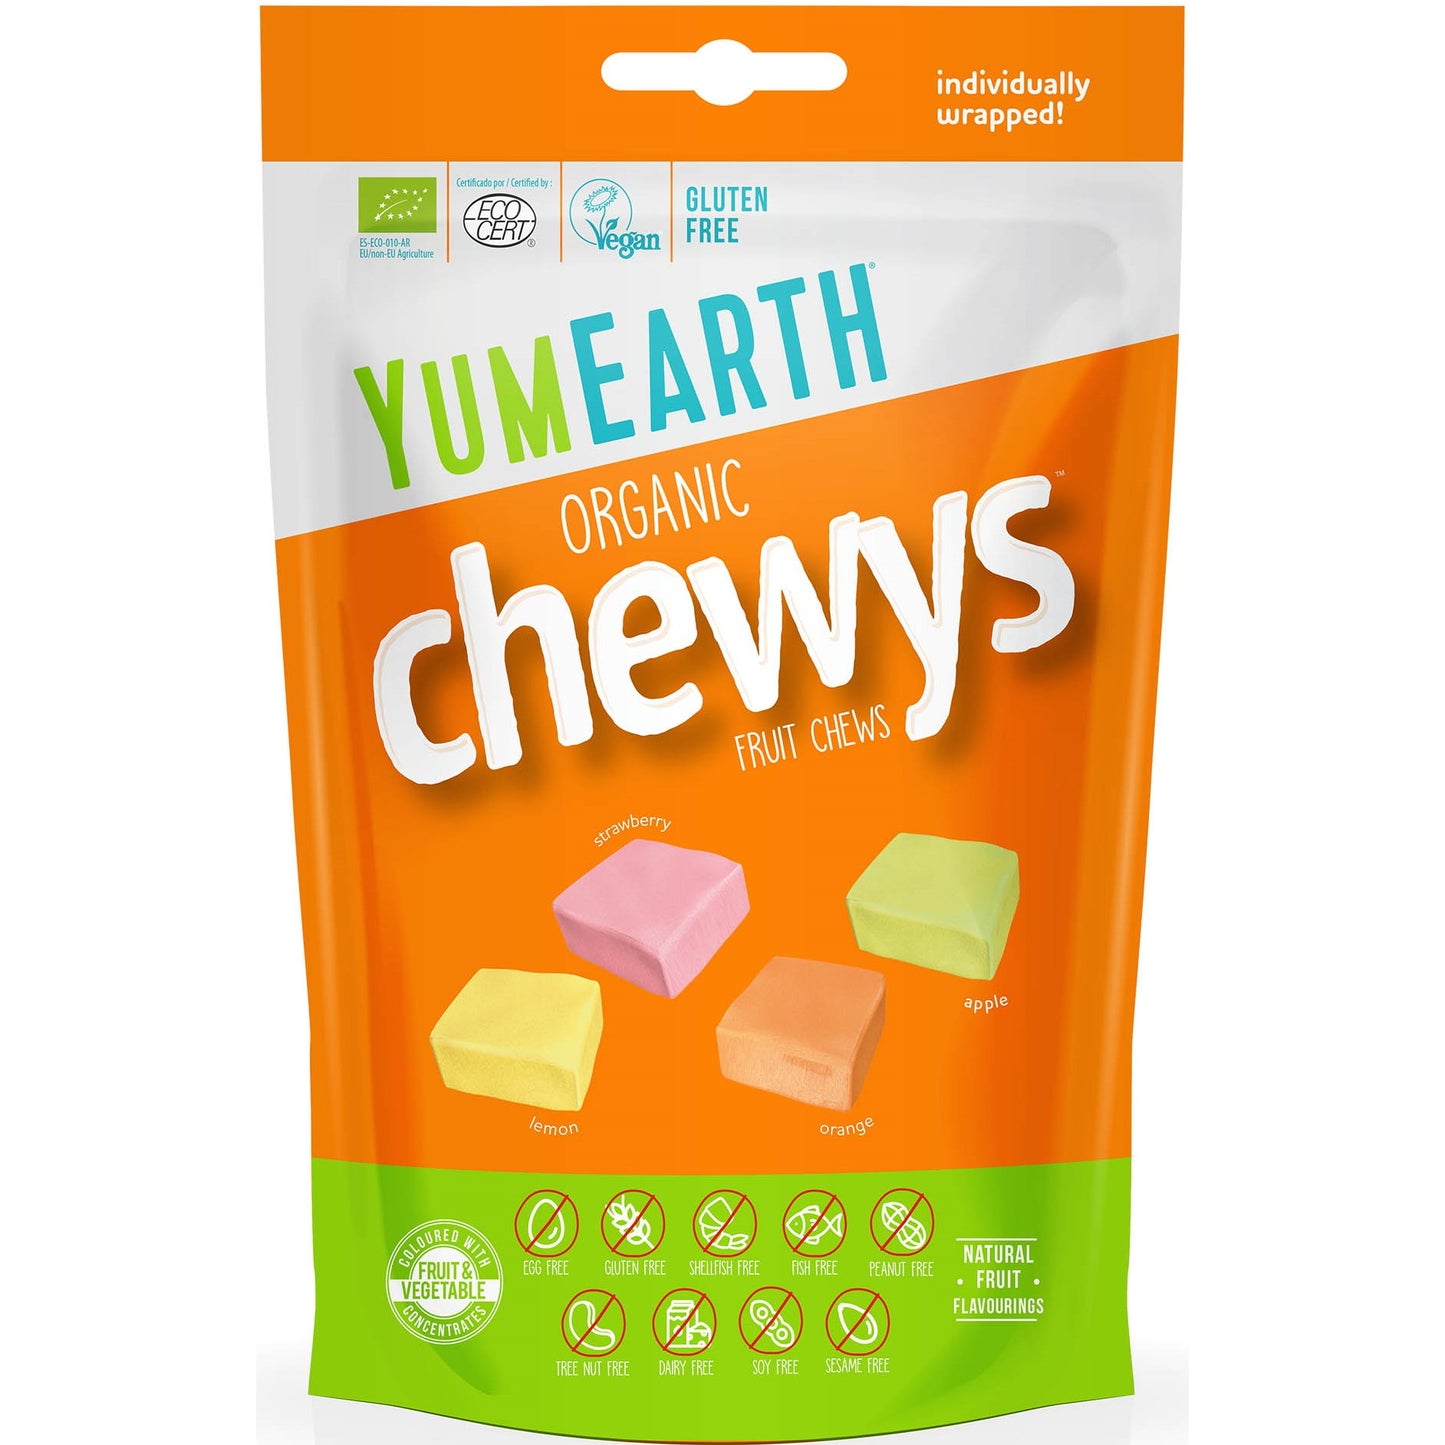 YumEarth Organiczne Słodycze, 31 Owocowych Gum do Żucia, EKO Gumy rozpuszczalne (Chewys), 142g